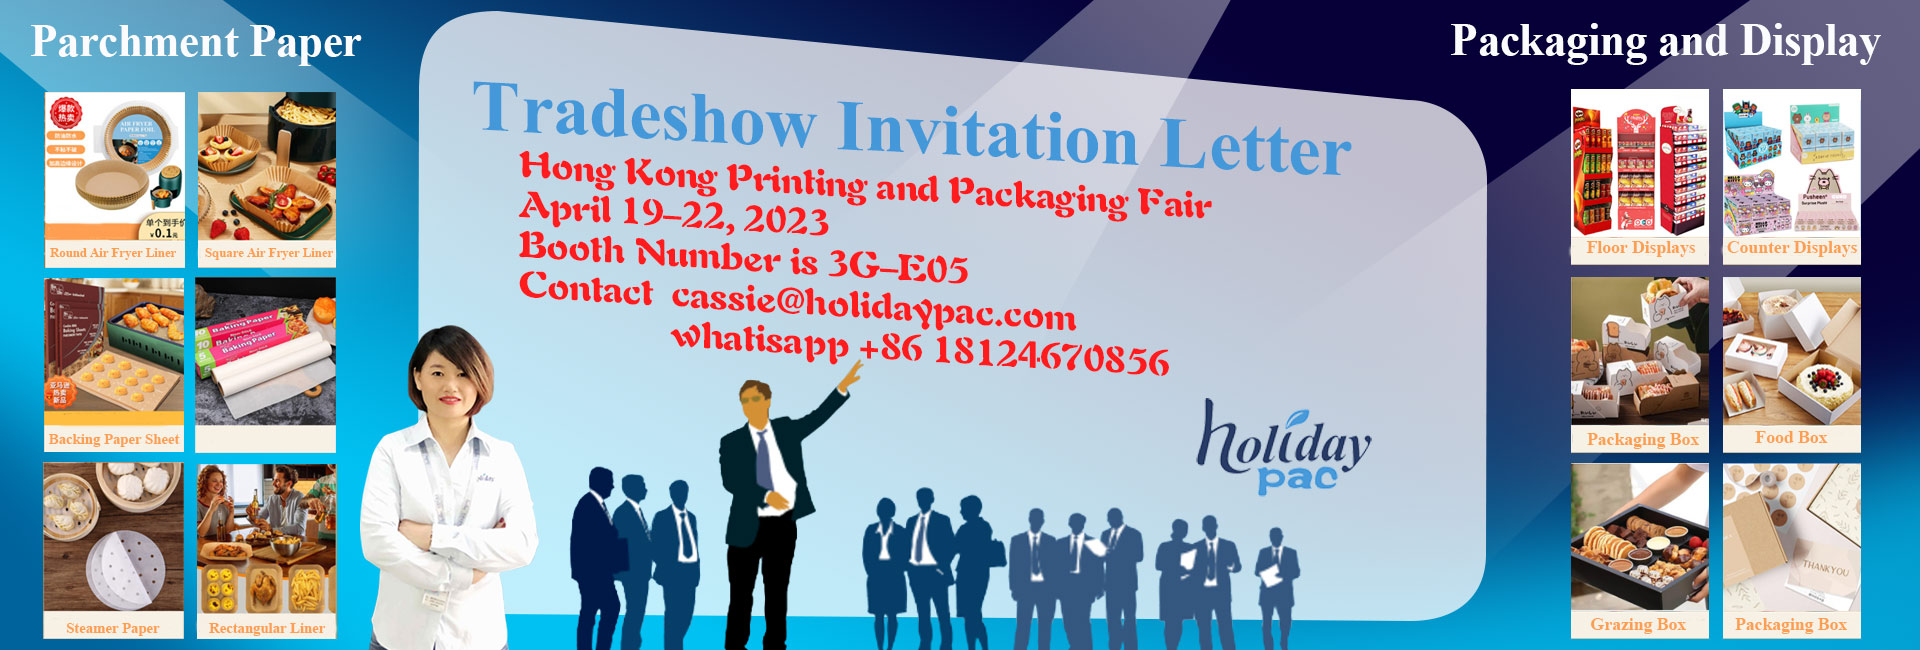 Holidaypac Hongkong Printing and Packaging Fair 2023 tradeshow Invitation 